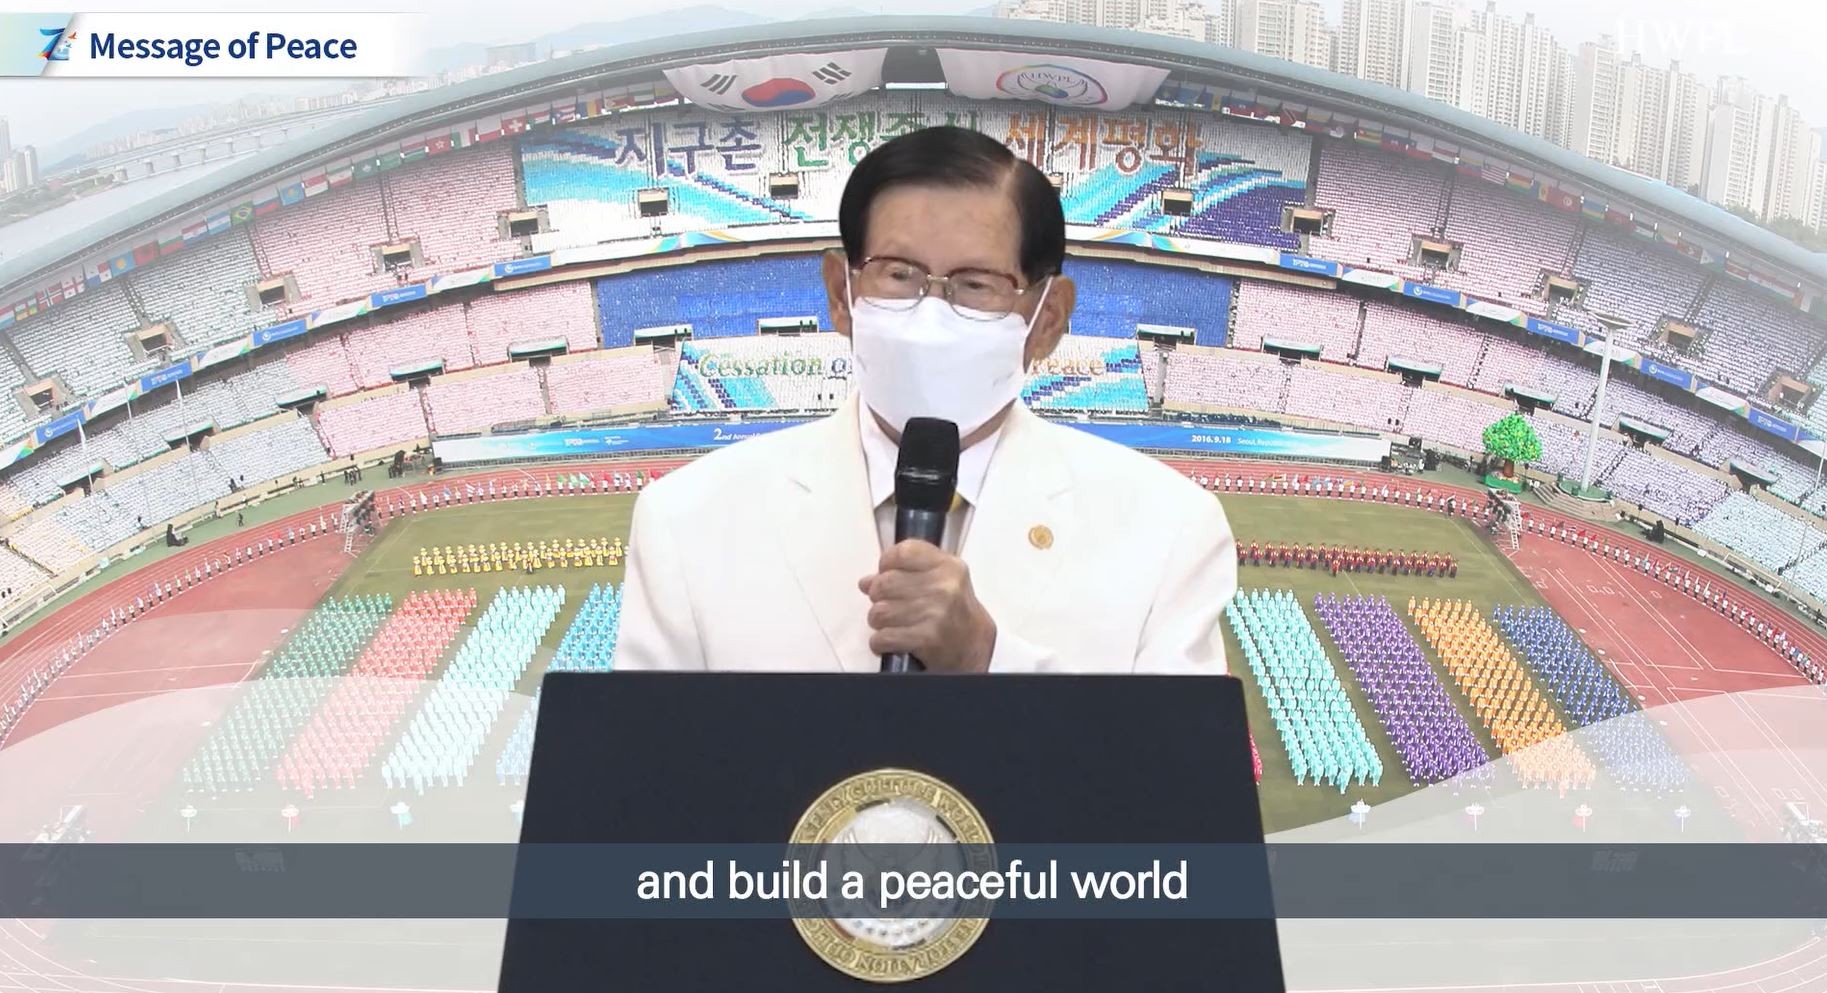 Samiti Botëror i Paqes që bën thirrje për veprim të bashkërenduar për paqe të qëndrueshme  